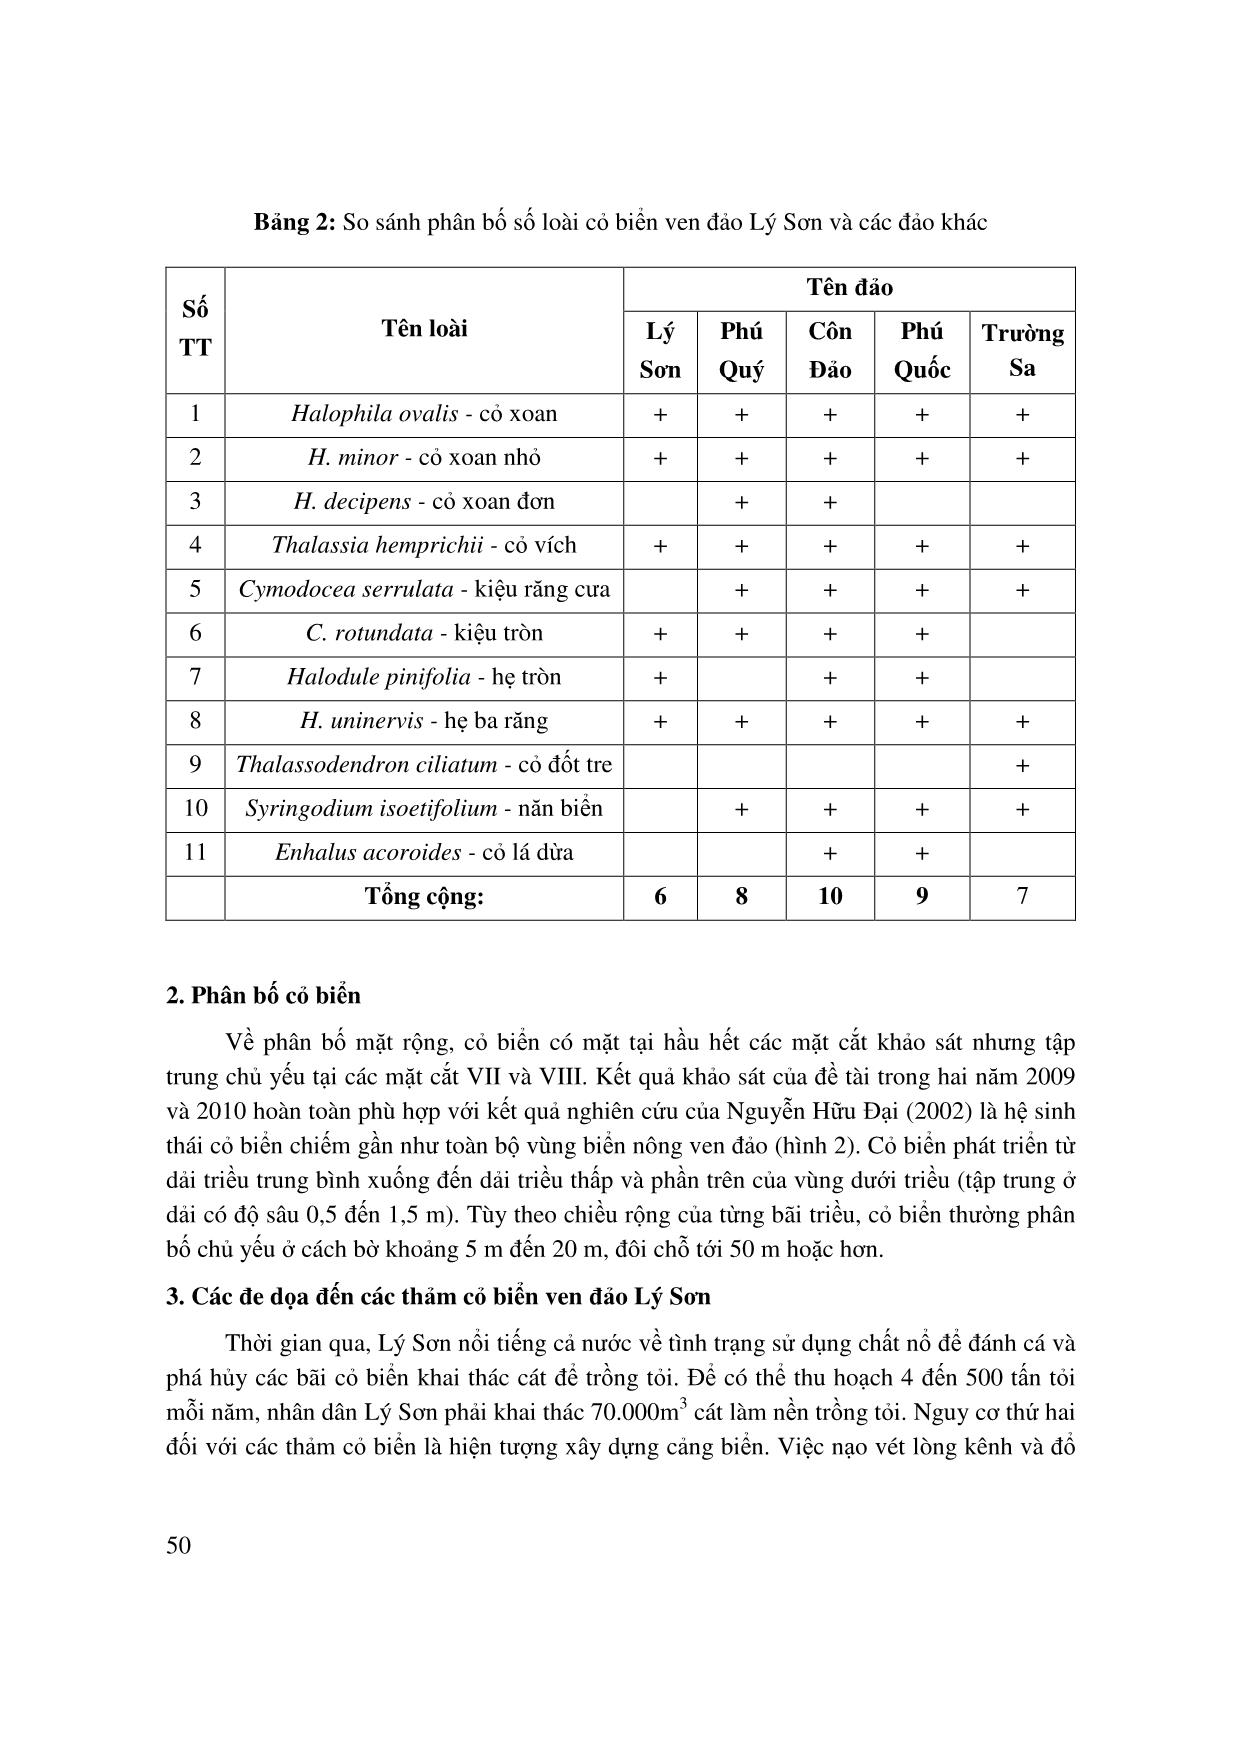 Áp dụng thử nghiệm phương pháp đánh giá định lượng tiềm năng bảo tồn hệ sinh thái cỏ biển ở ven đảo Lý Sơn, Quảng Ngãi trang 4